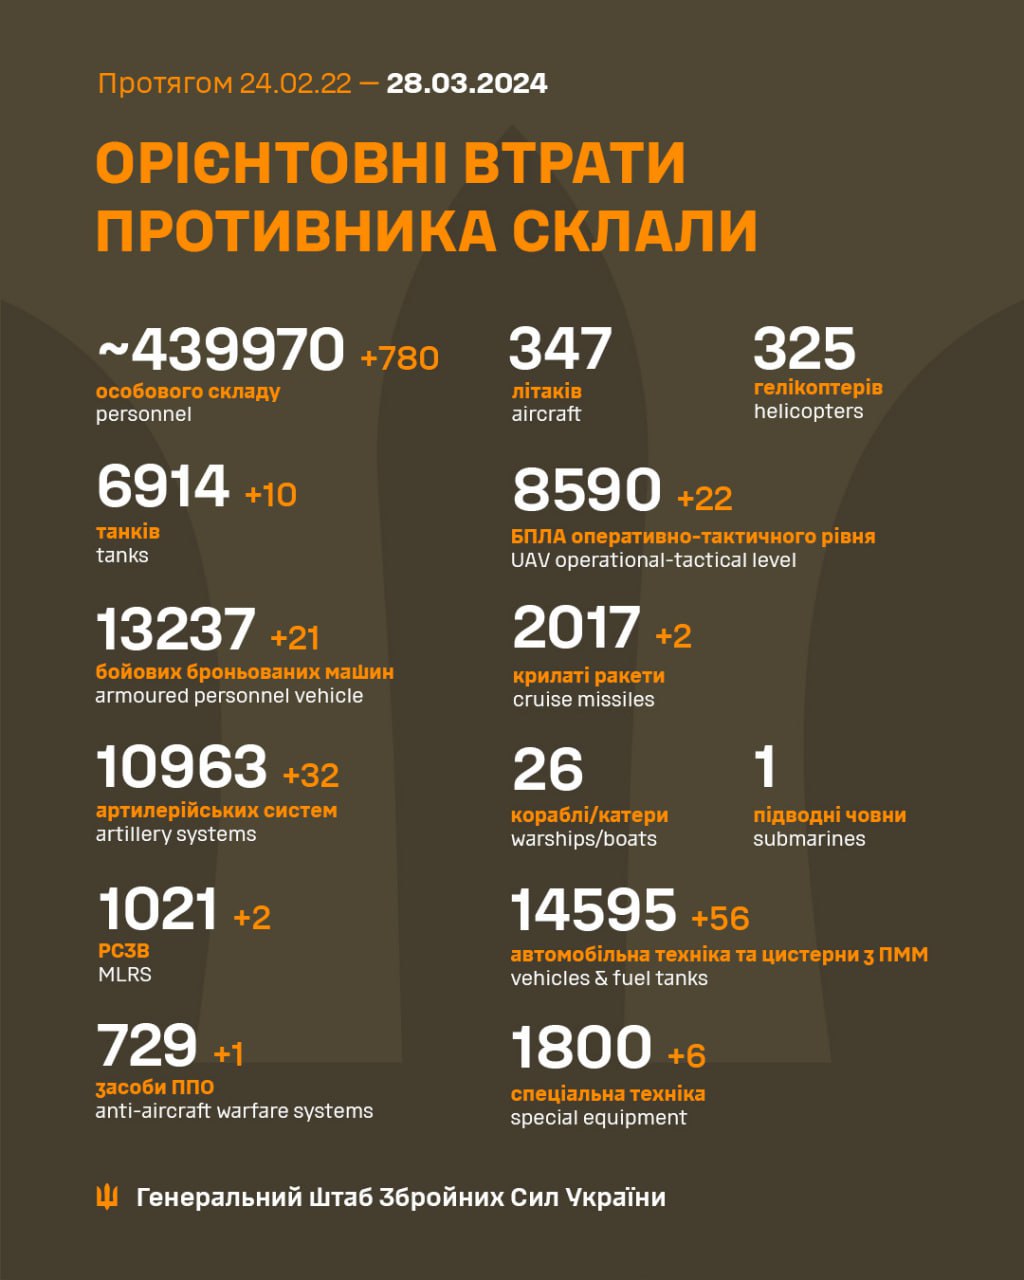 Почти 800 оккупантов и 56 автомобилей. Генштаб обновил потери РФ в Украине